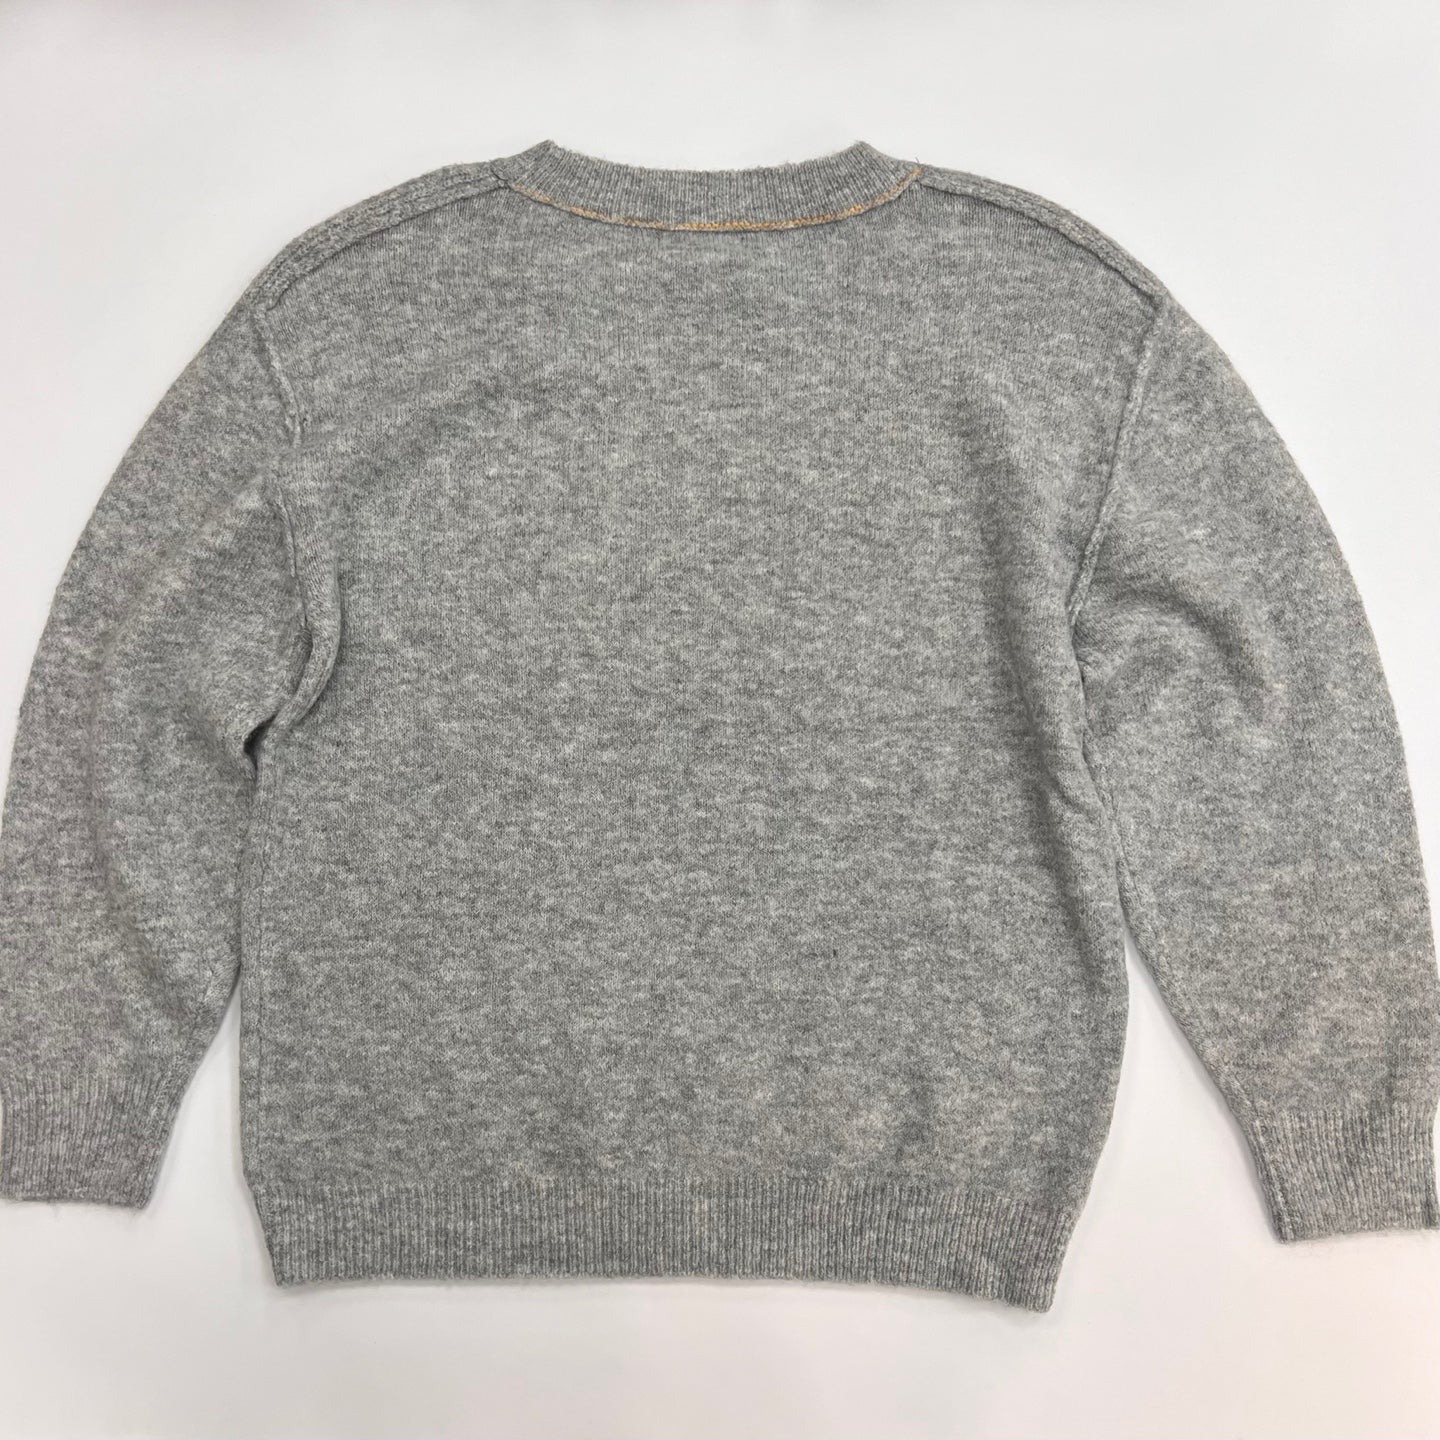 Women's Knit Sweater Top